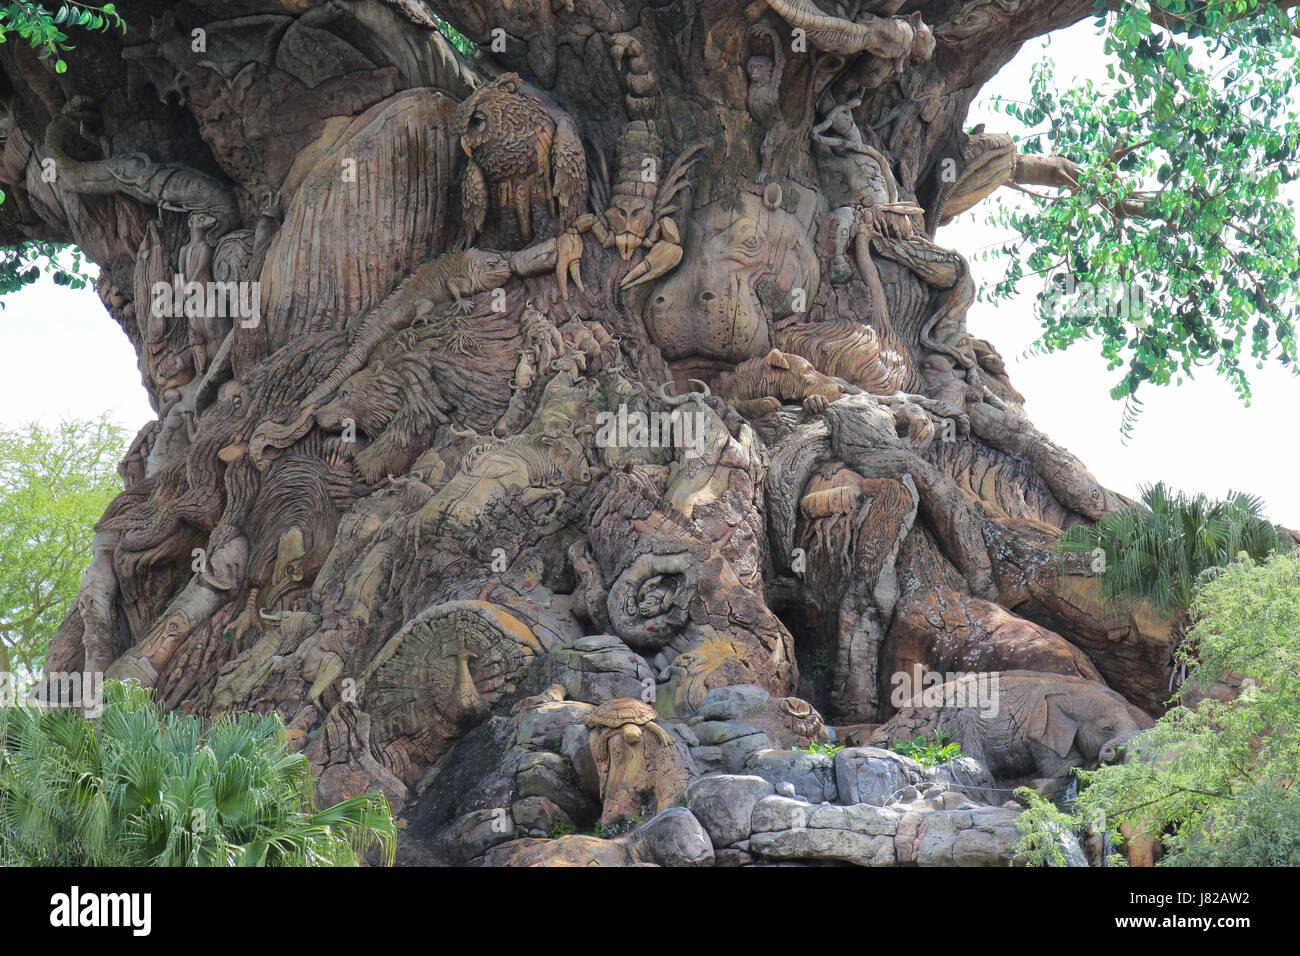 El árbol de la vida en el Reino Animal de Disney en Florida Foto de stock